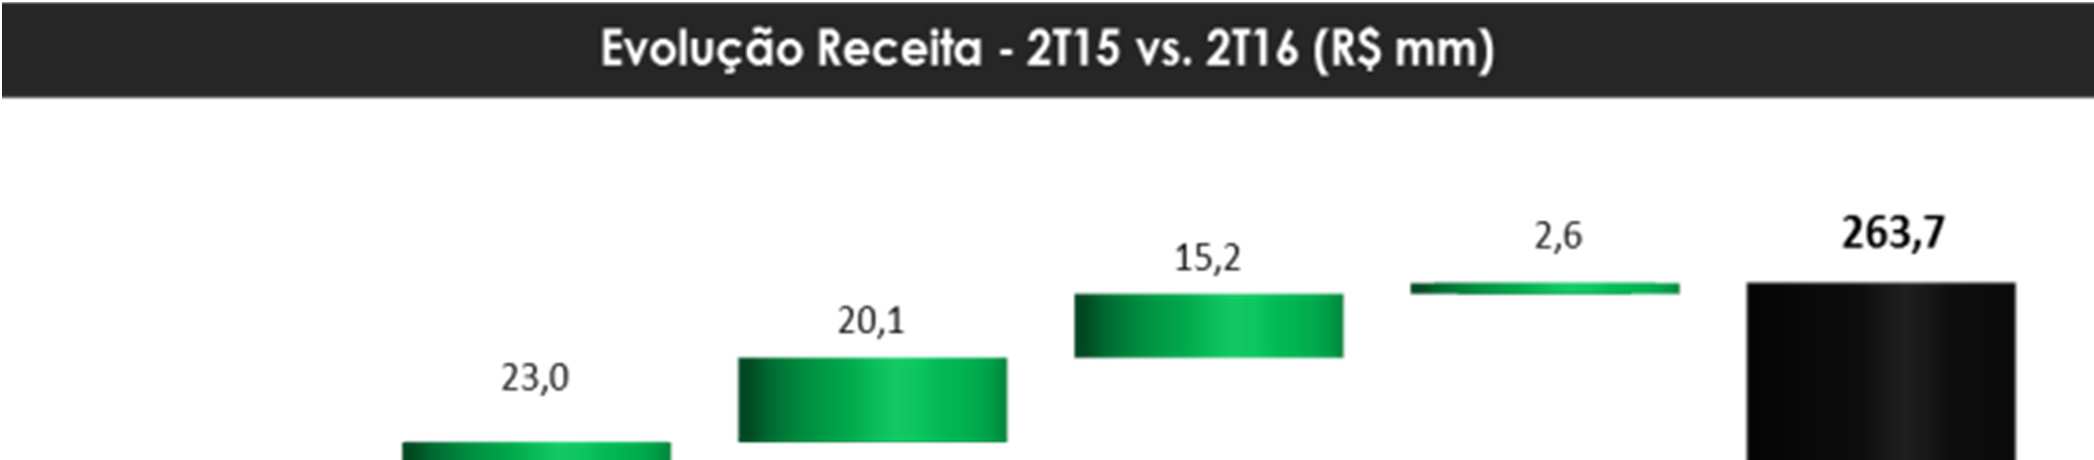 15Receita Líquida A Receita líquida das operações continuadas no 2T16 cresceu 30% em relação ao 2T15, totalizando R$ 263,7 milhões.